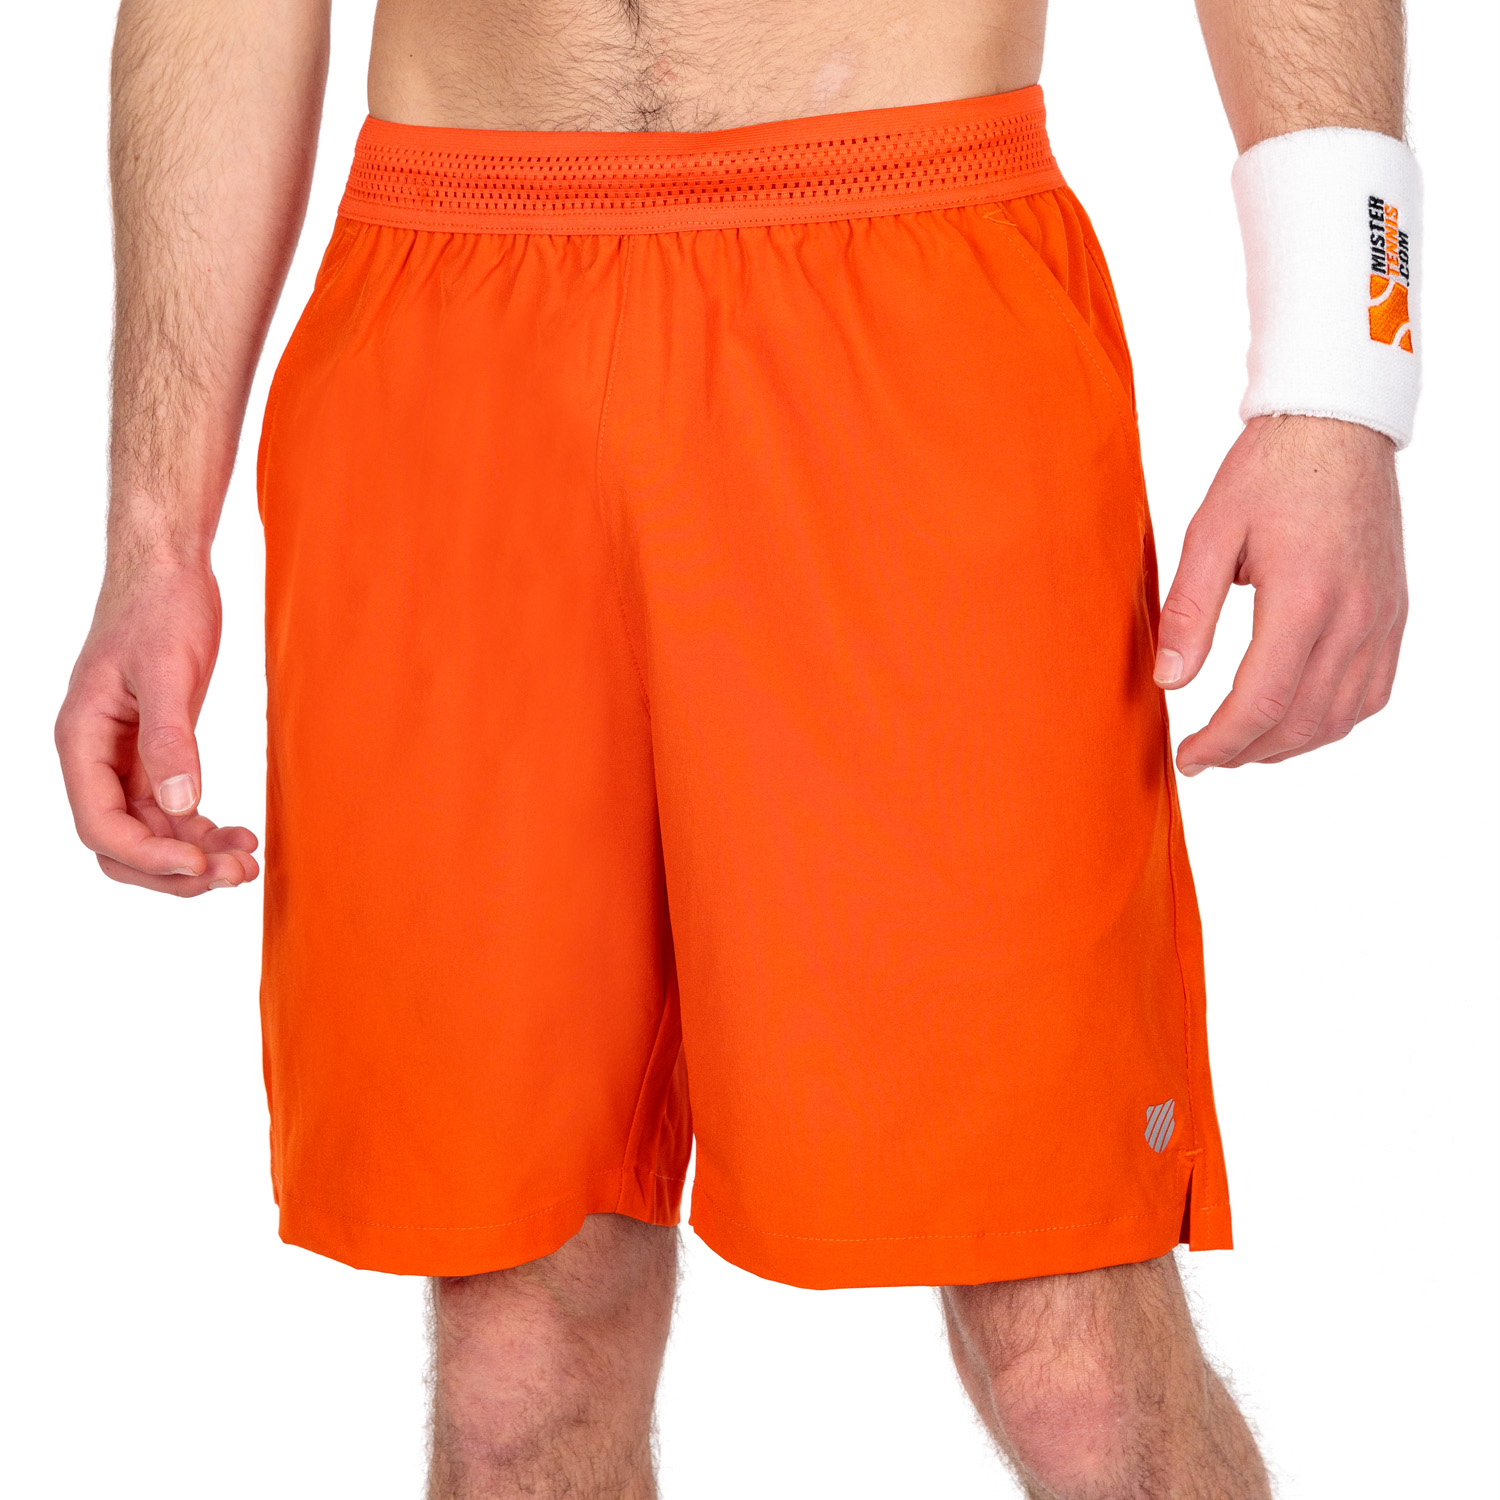 K-Swiss Hypercourt 7in Shorts - Spicy Orange